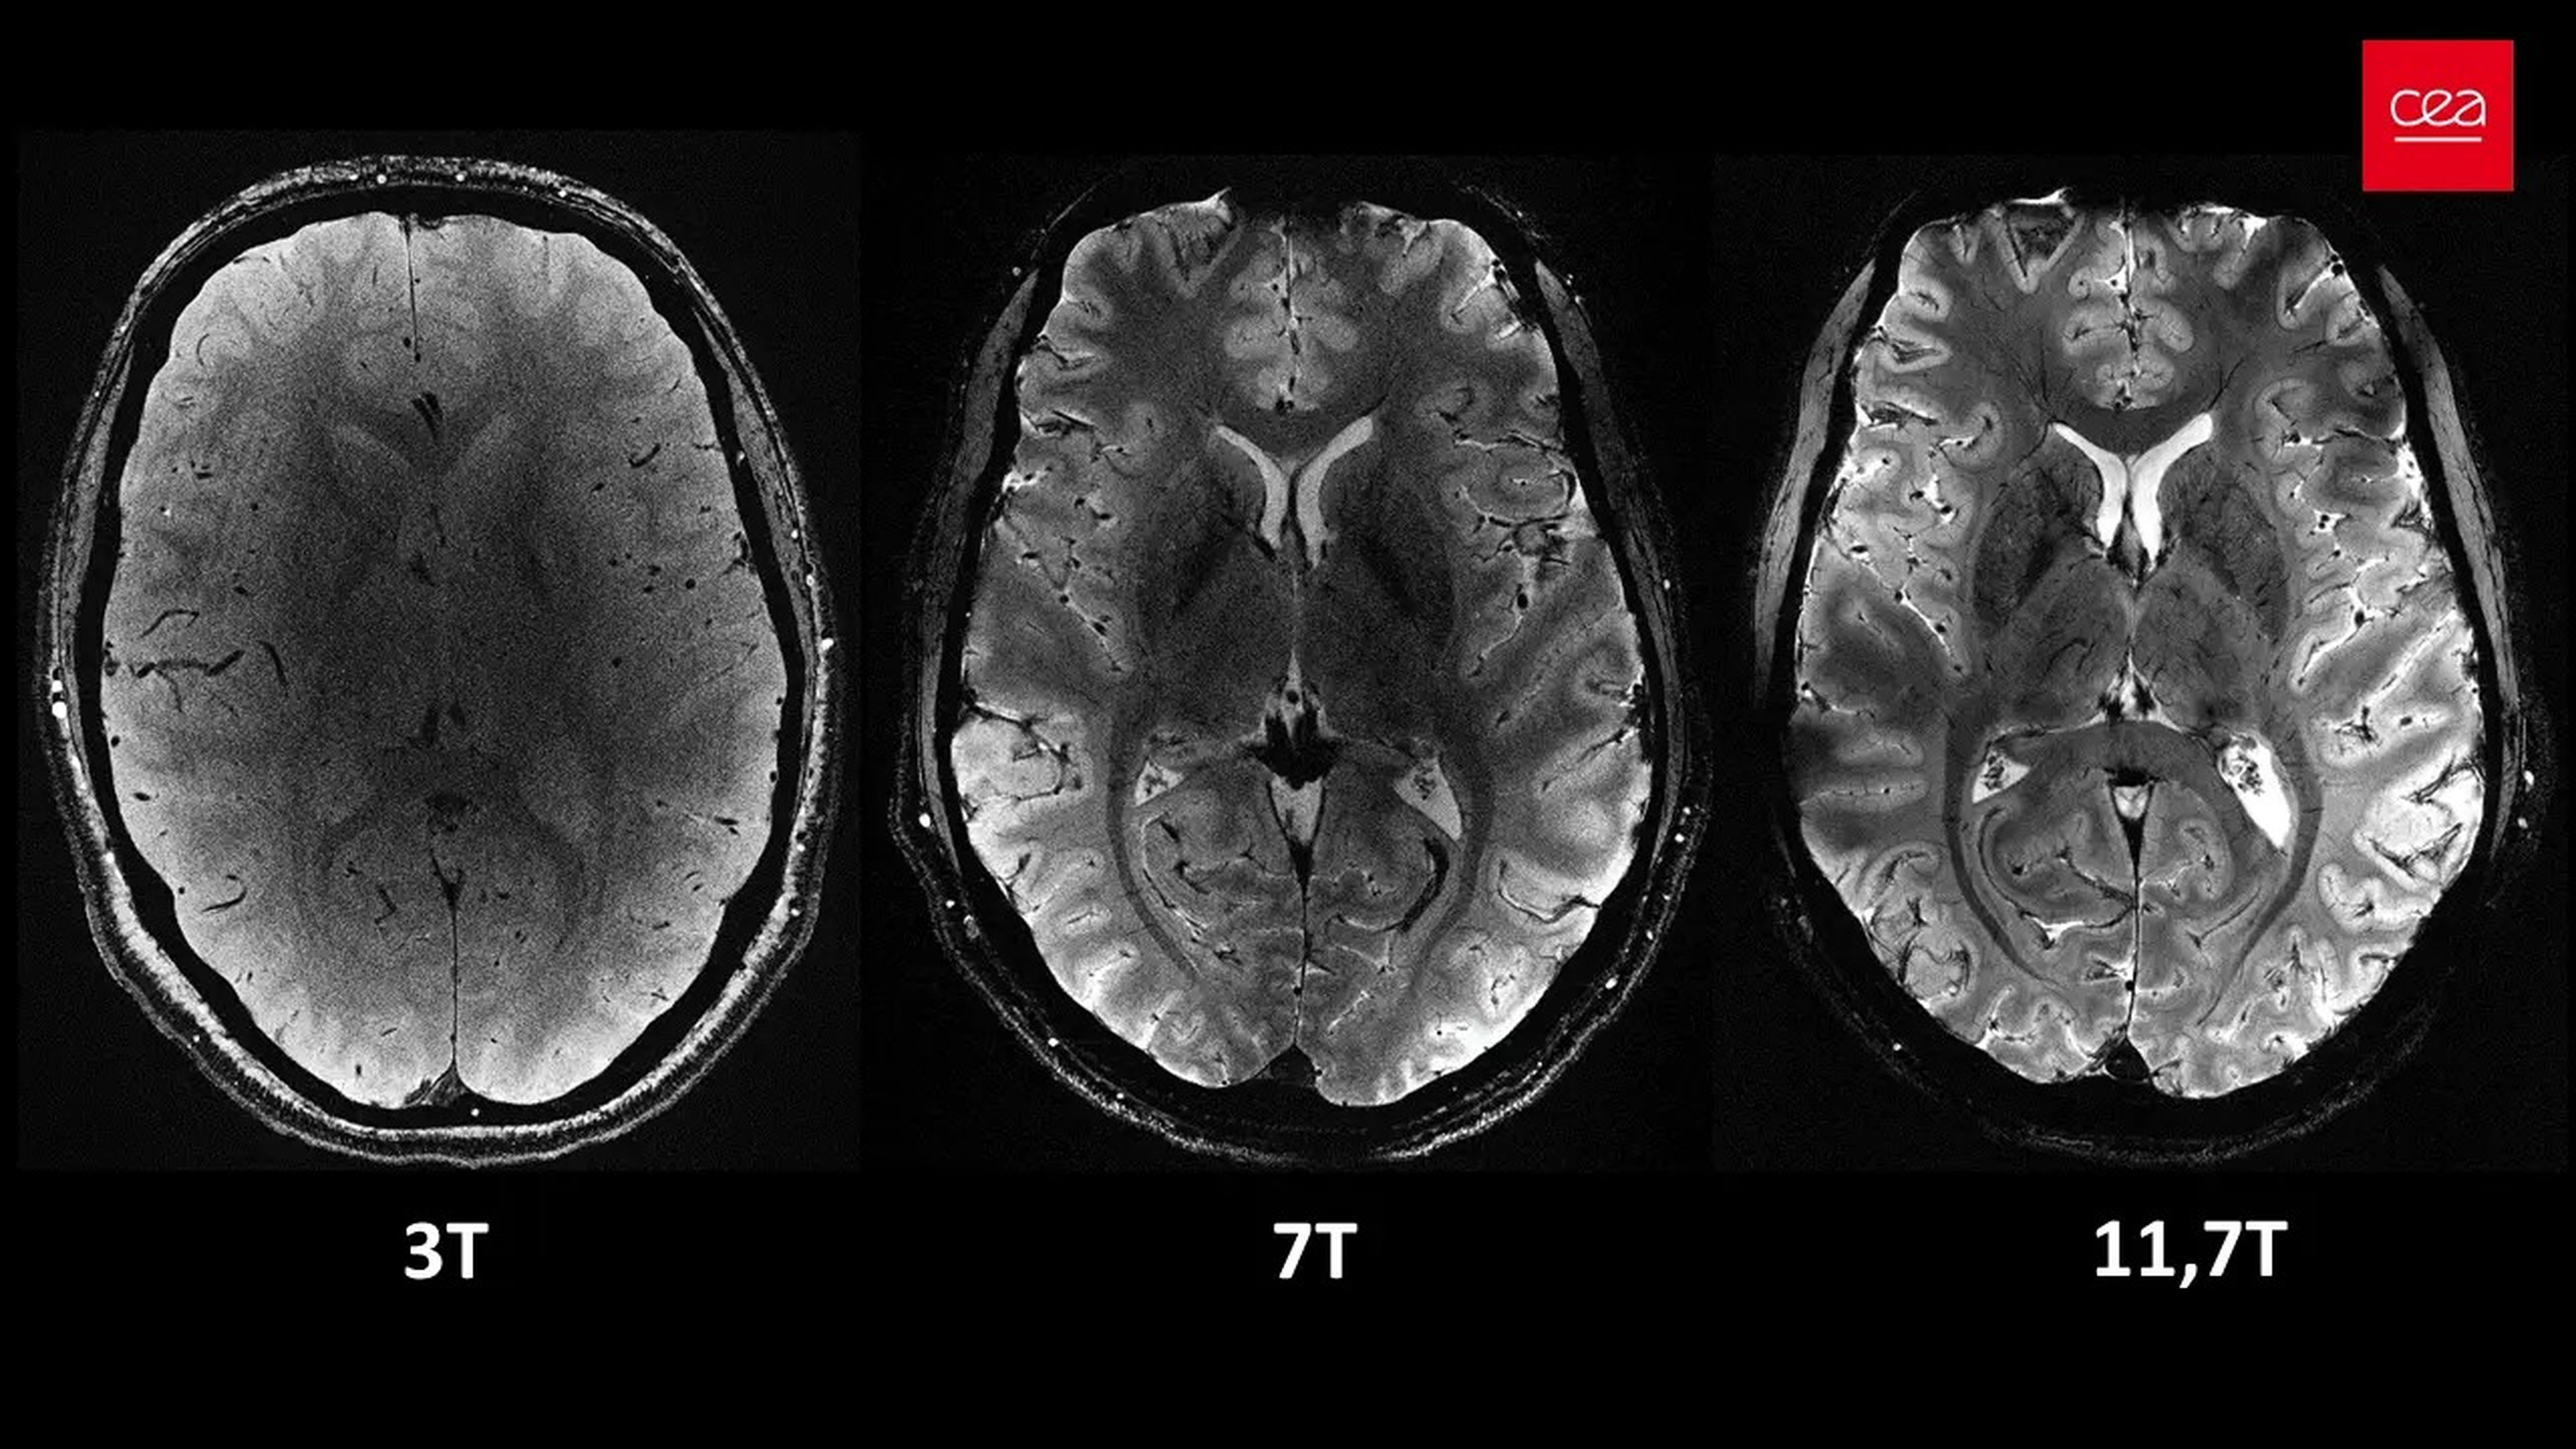 Secciones axiales del cerebro humano tomadas con tres potencias diferentes de IRM, 3T, 7T y la francesa 11,7T.